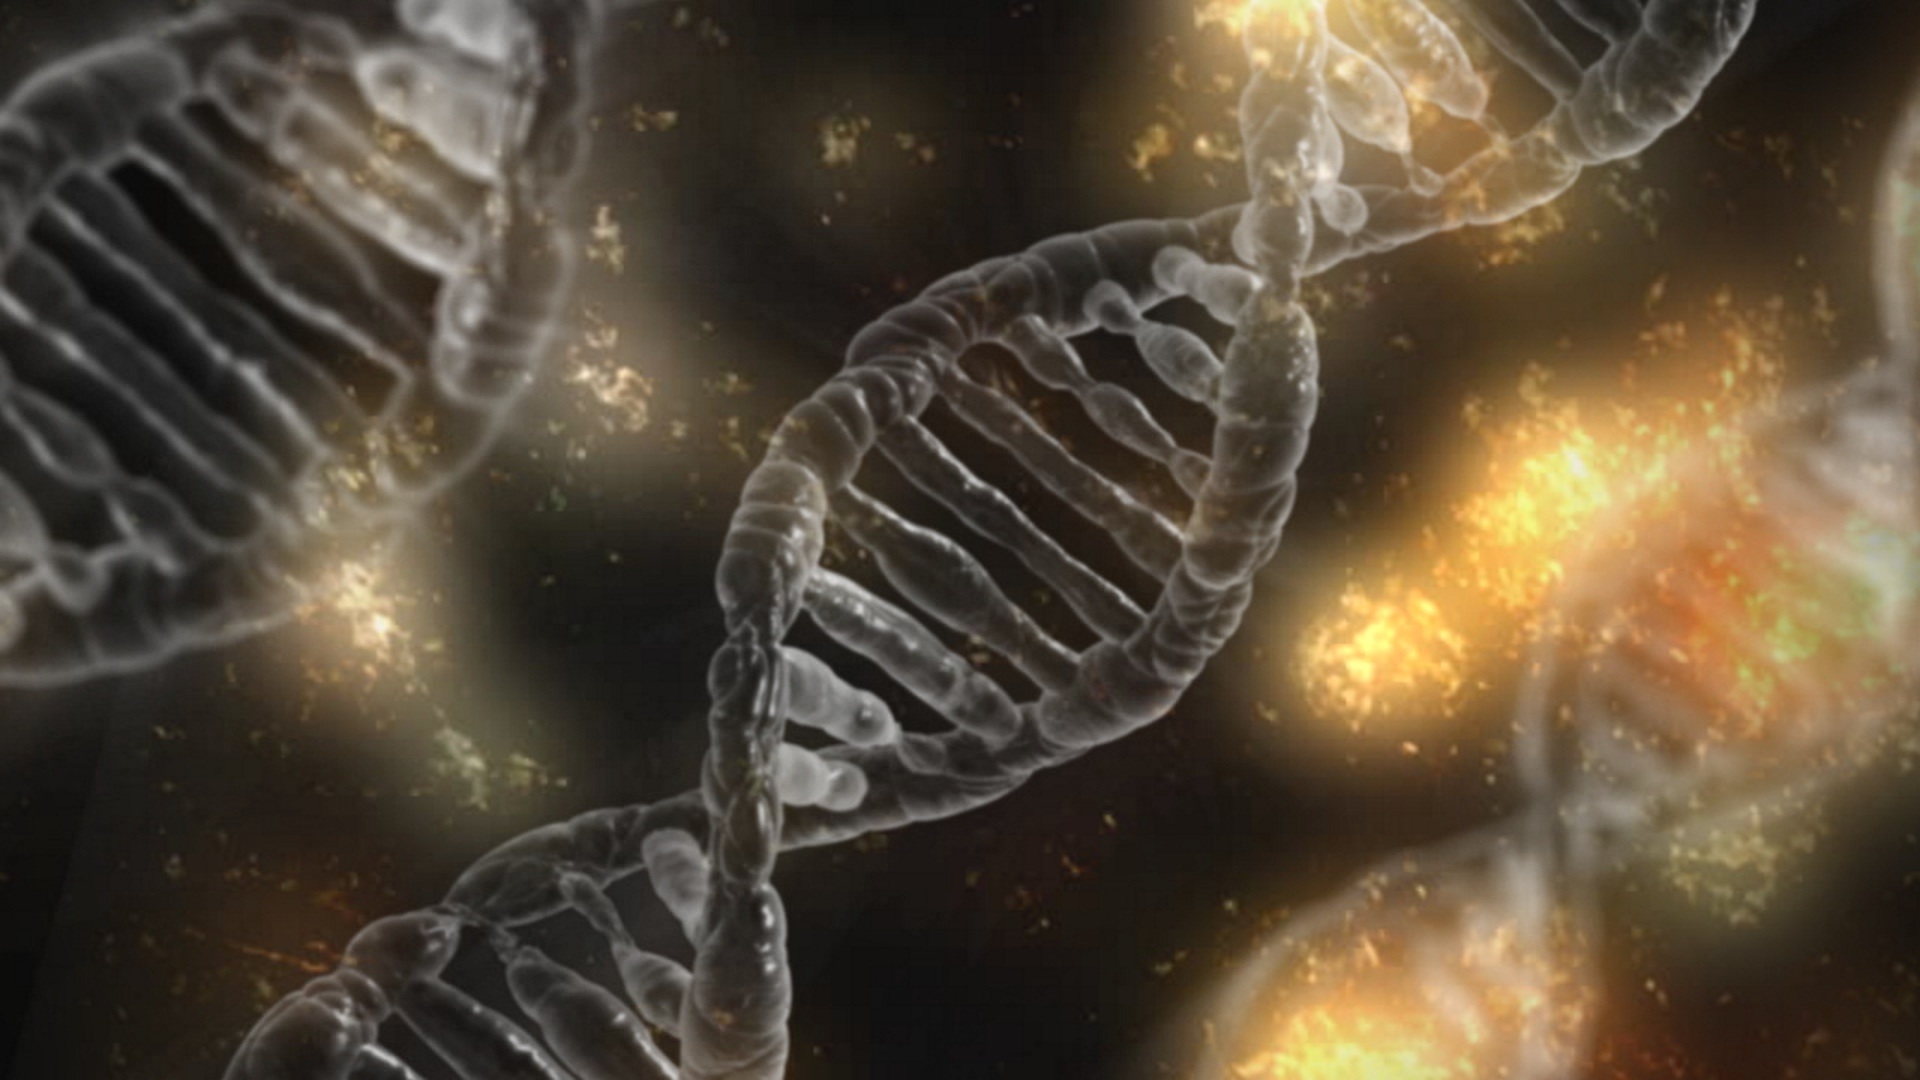 Los humanos modernos llevamos ADN de unos extraños parientes